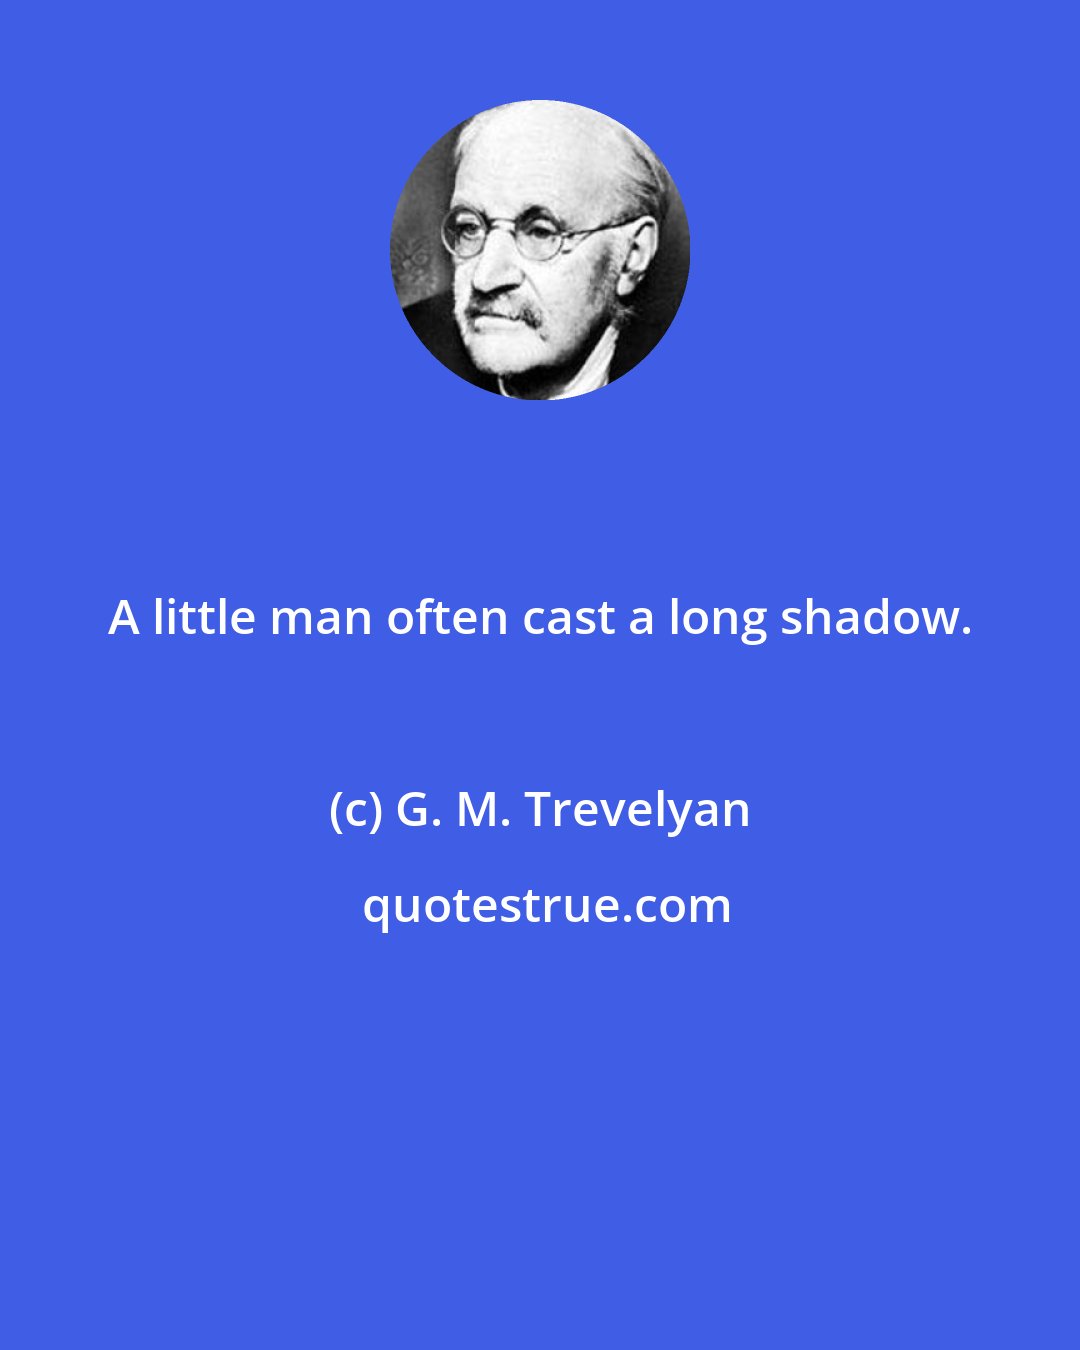 G. M. Trevelyan: A little man often cast a long shadow.